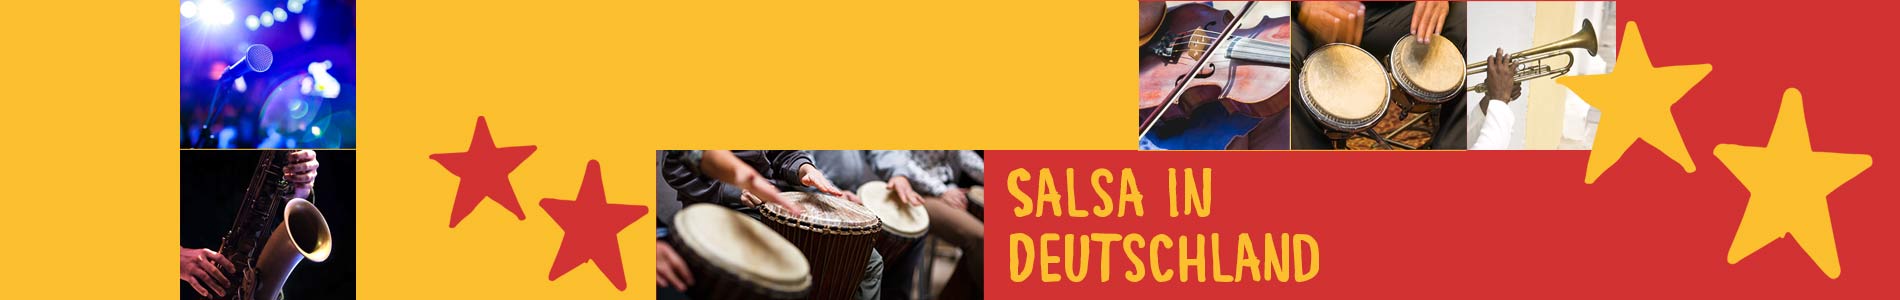 Salsa in Dannewerk – Salsa lernen und tanzen, Tanzkurse, Partys, Veranstaltungen